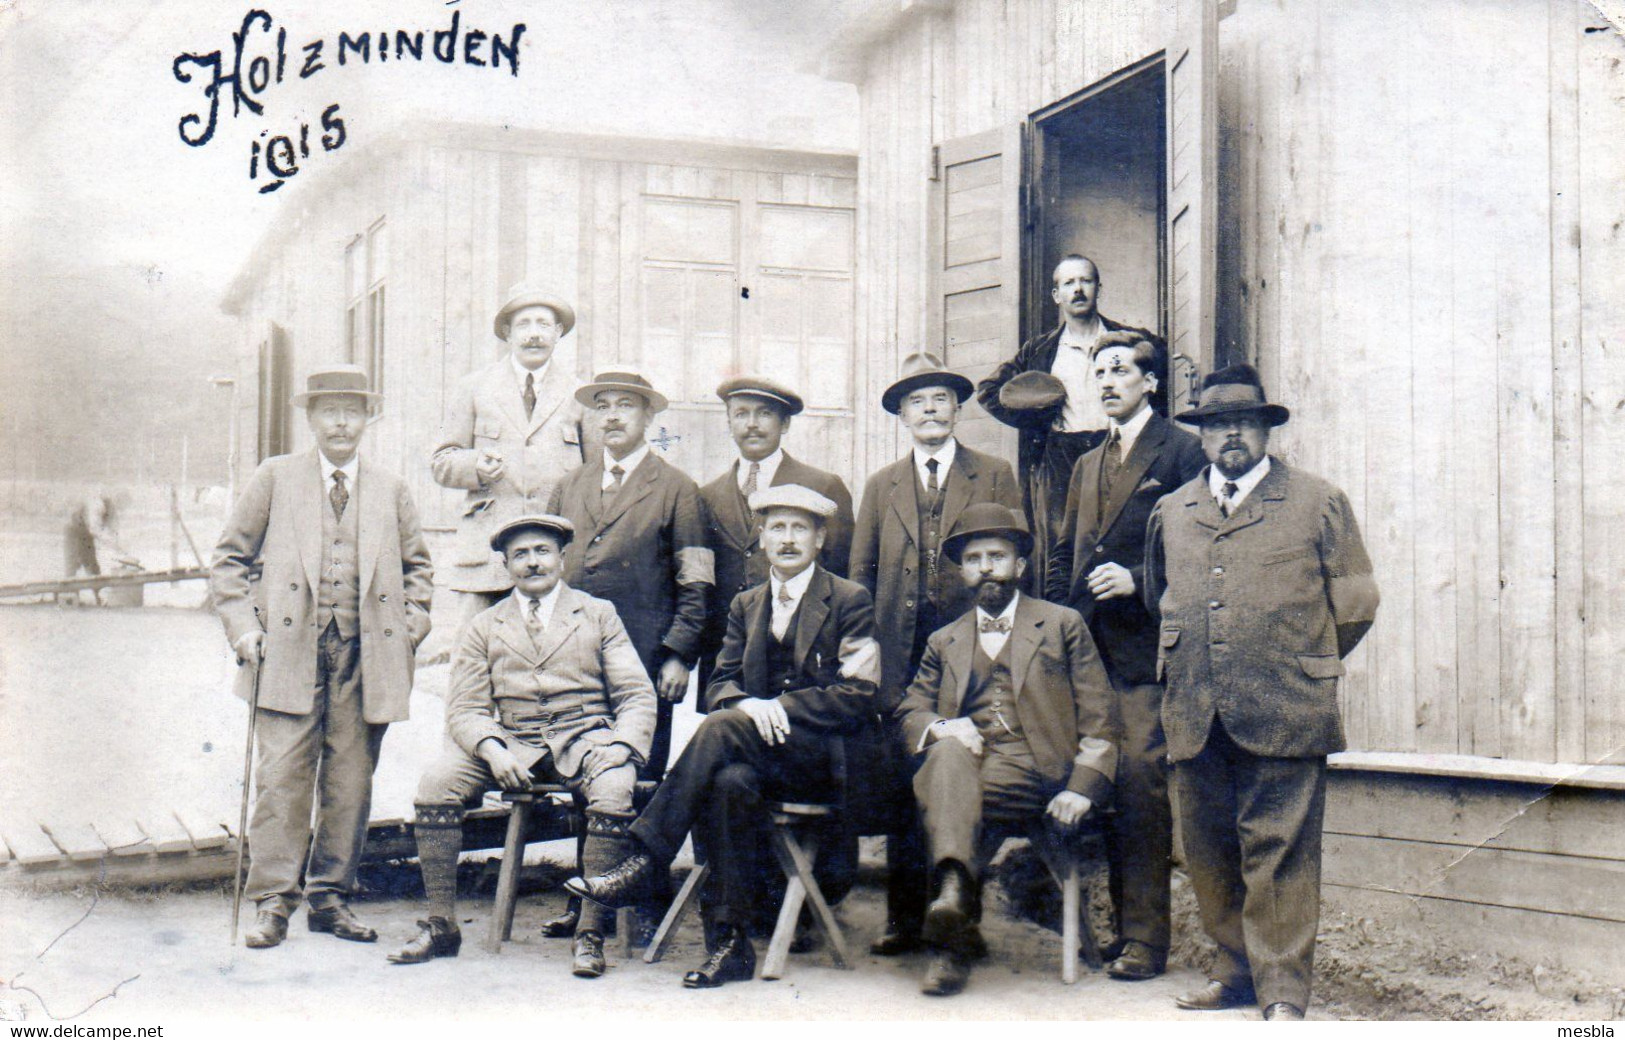 MILITARIA - CARTE - PHOTO -   HOLZMINDEN (1915)  Lager Holzminden - Baracke 61a - Kriegs-gefangenen-sendung - Holzminden